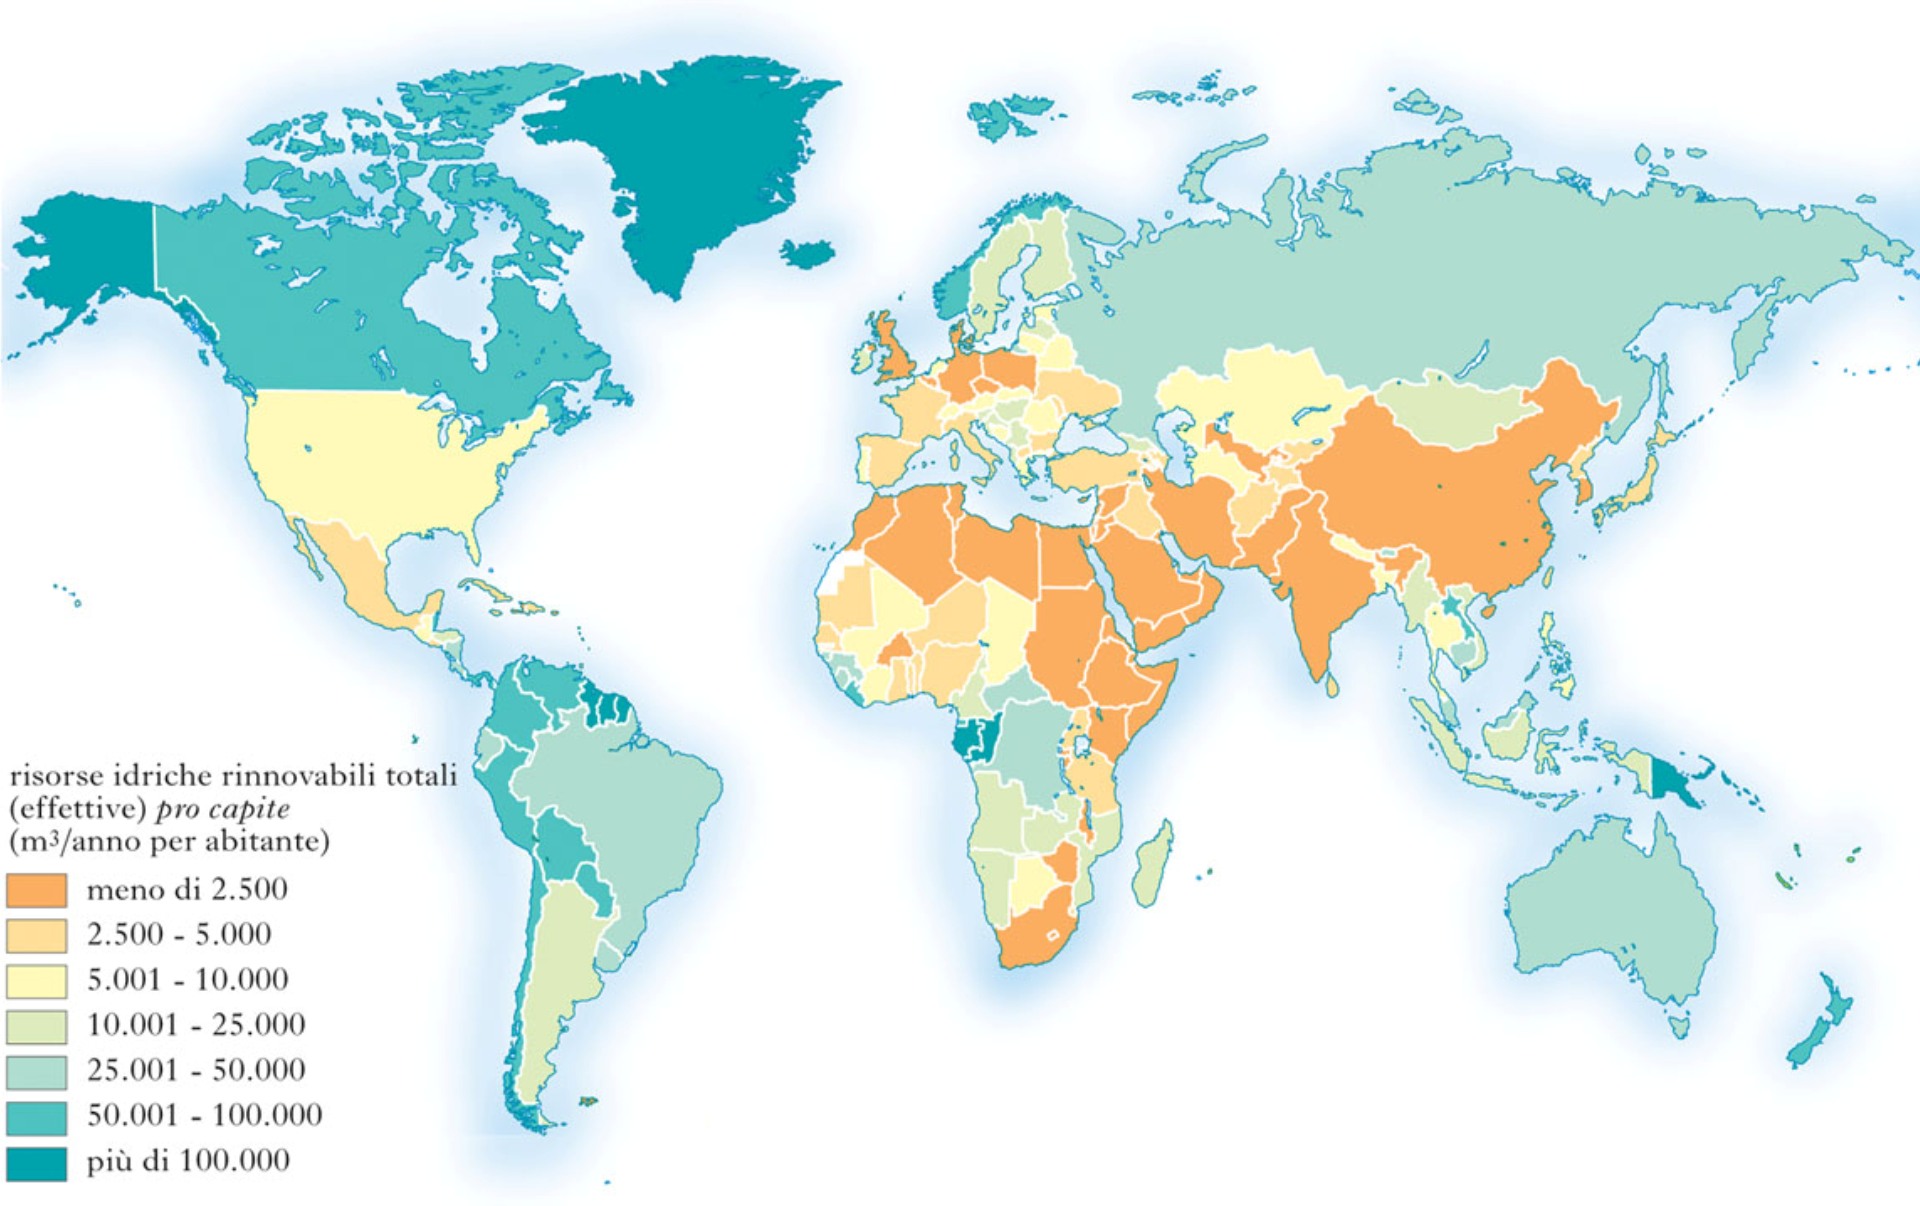 Mappa Mondiale delle Risorse Idriche e delle emergenze sociali